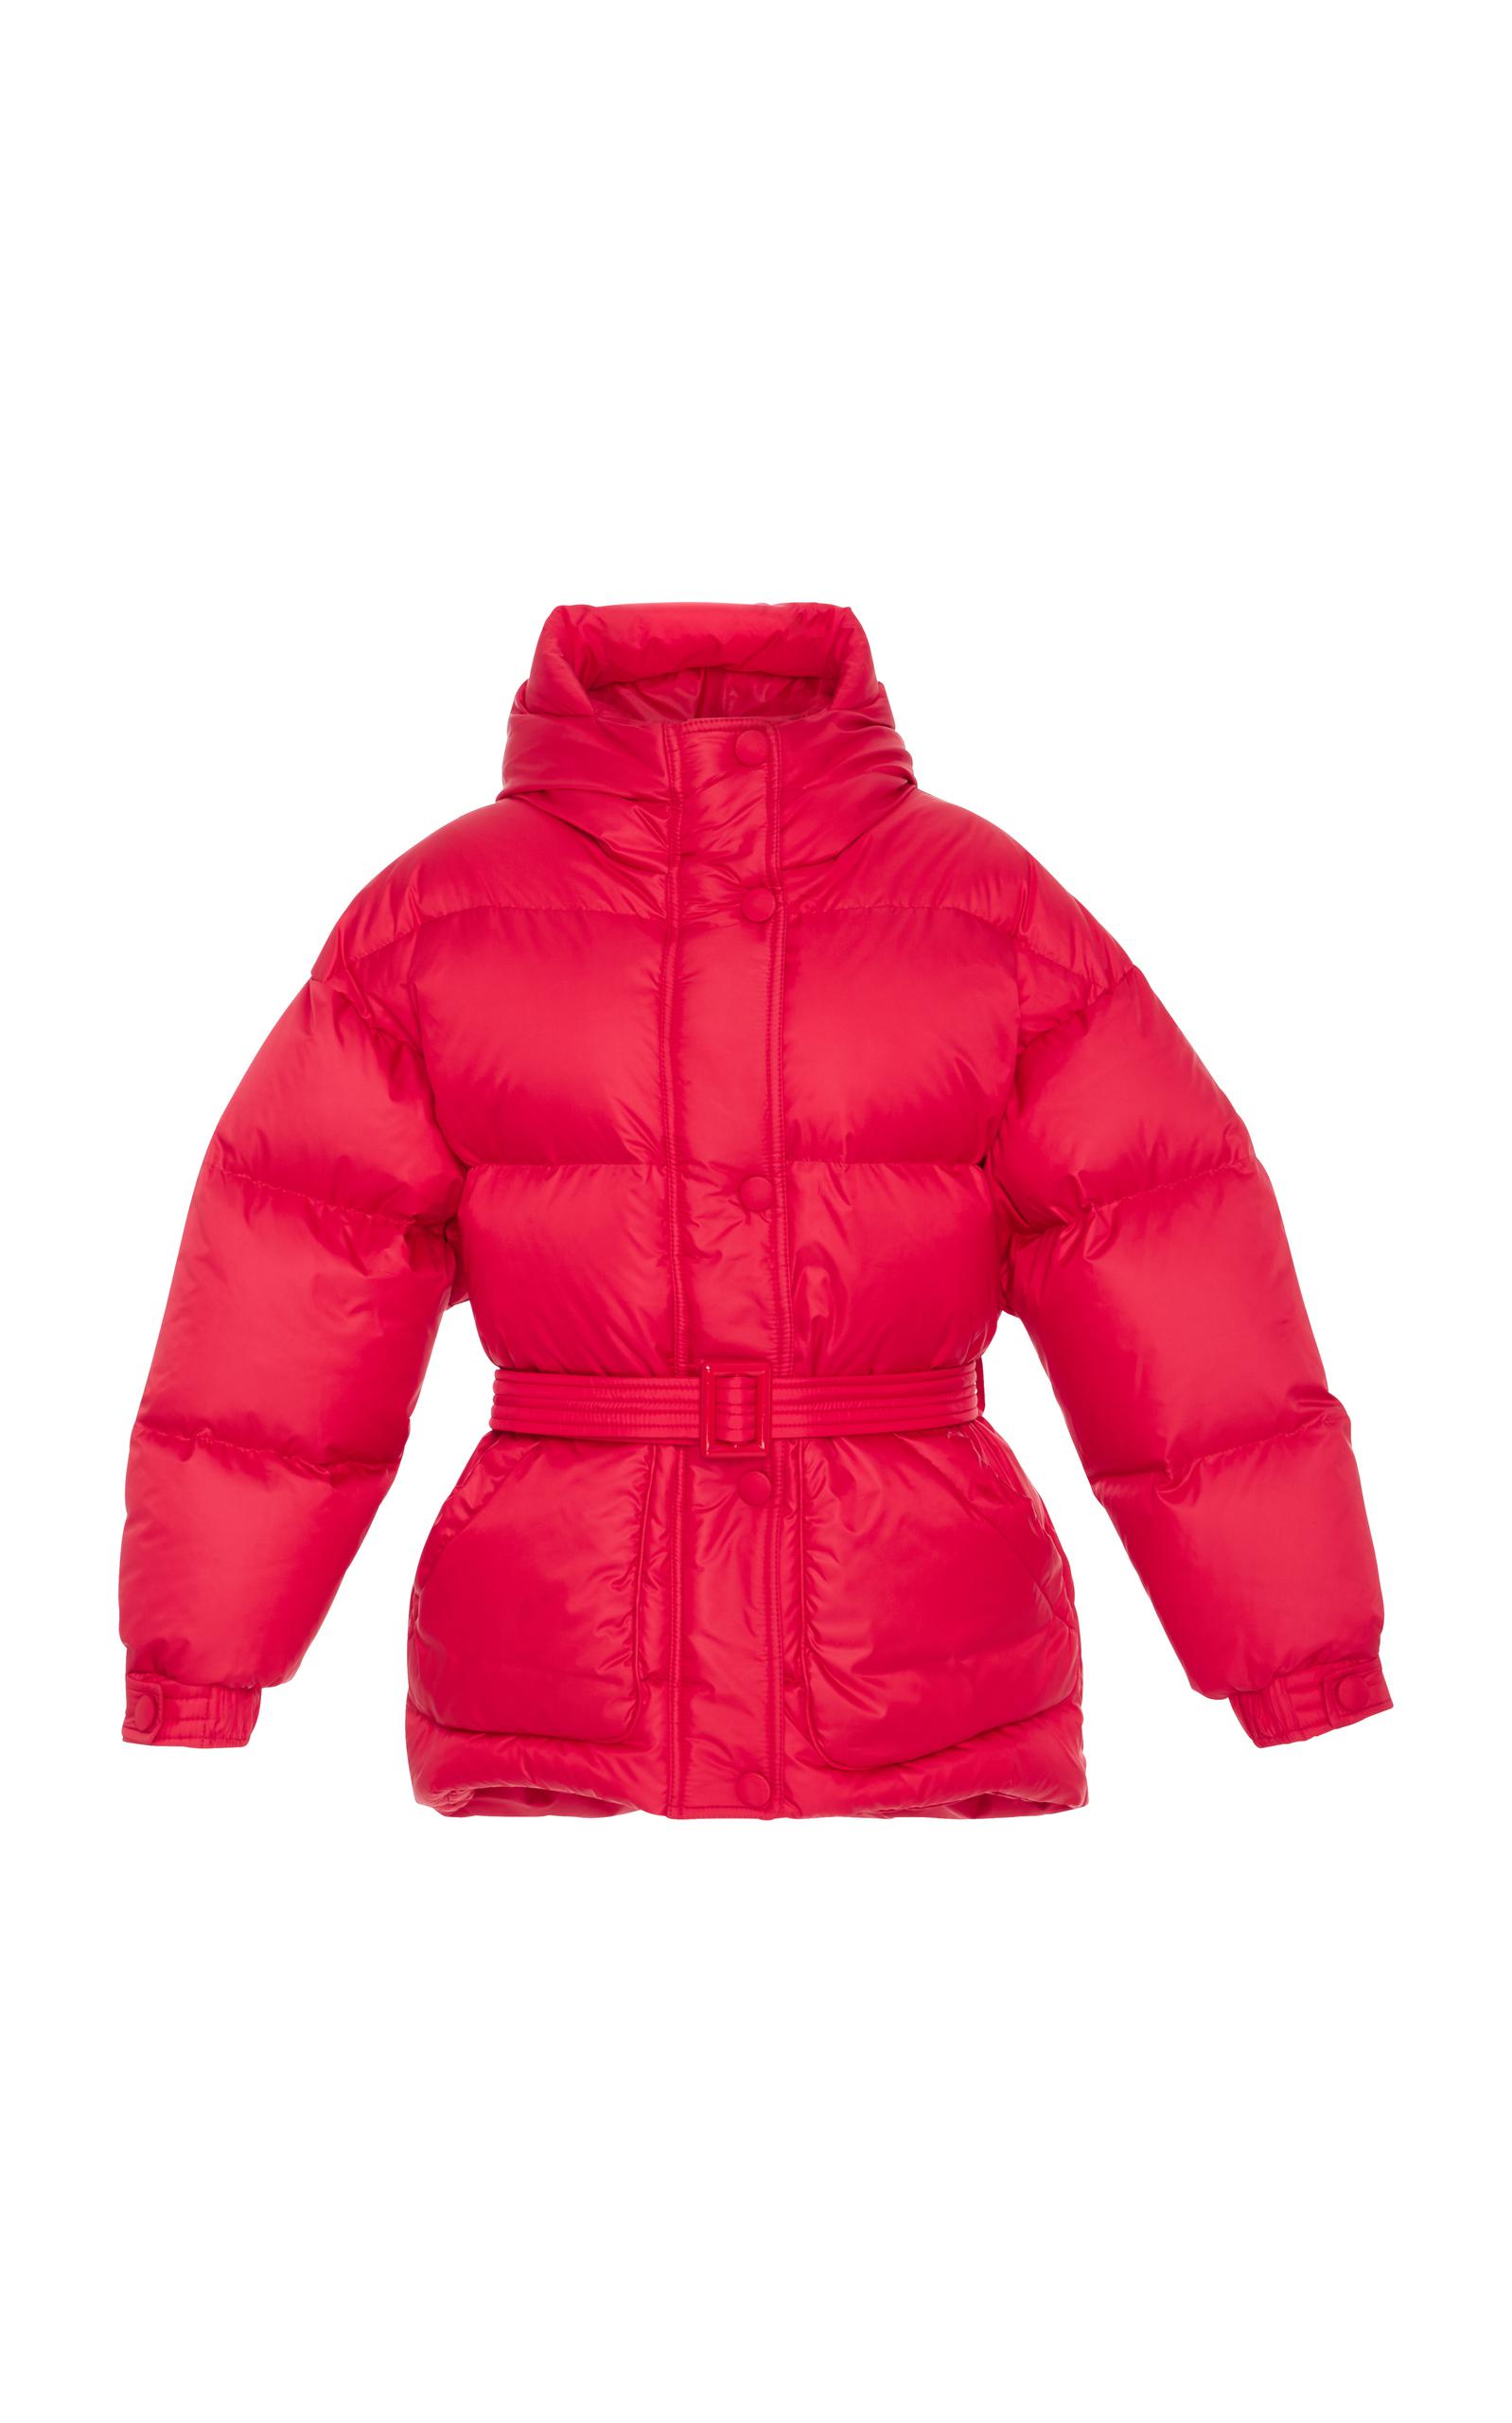 Ienki Ienki Goose Michelin Belted Puffer Jacket in Red - Lyst